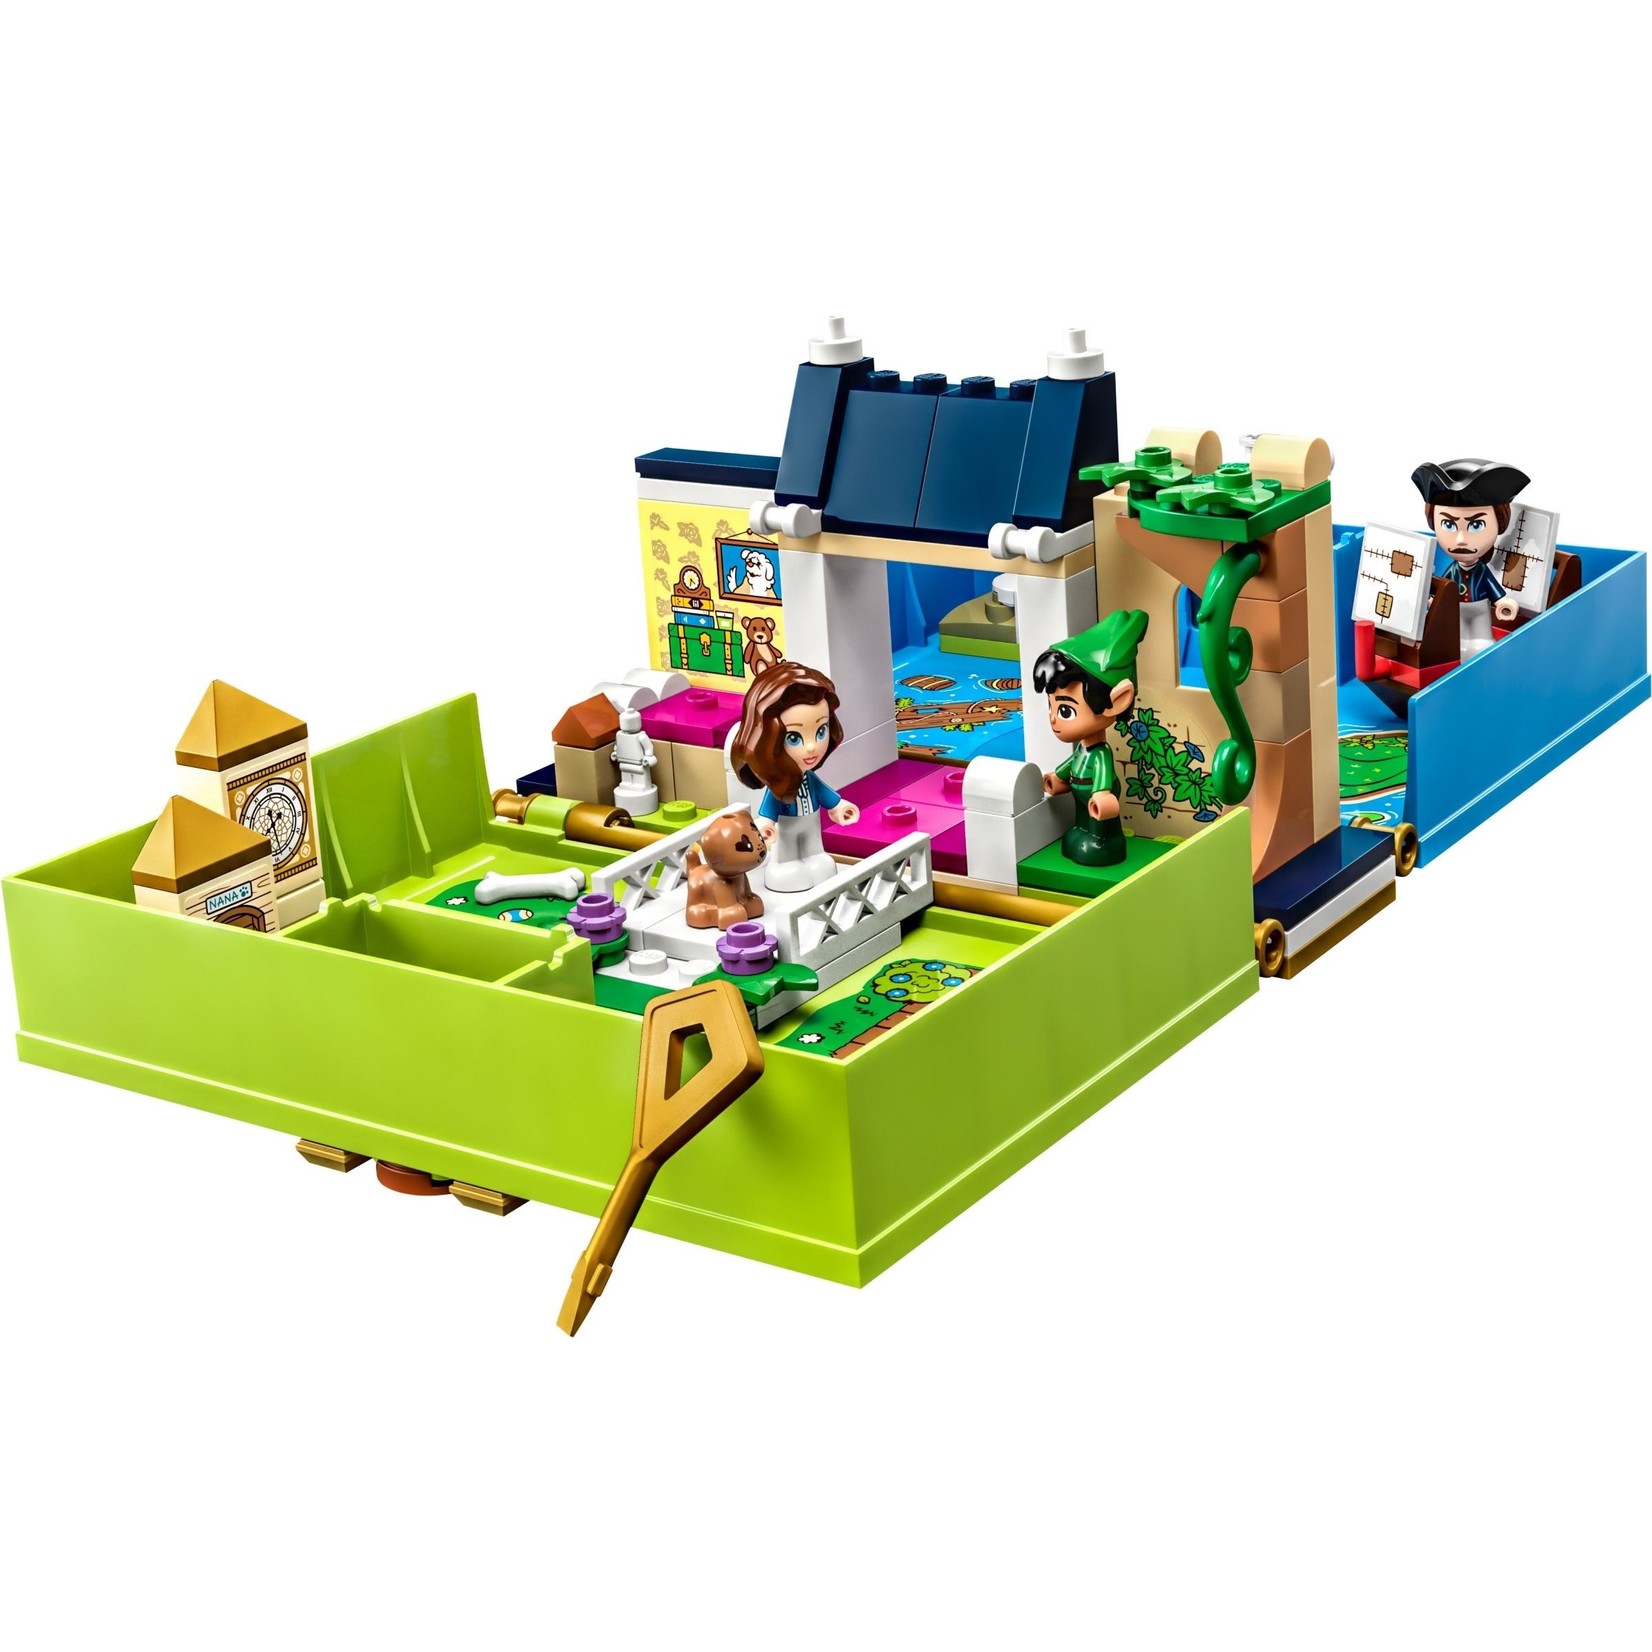 LEGO Peter Pan & Wendy's verhalenboekavontuur - 43220